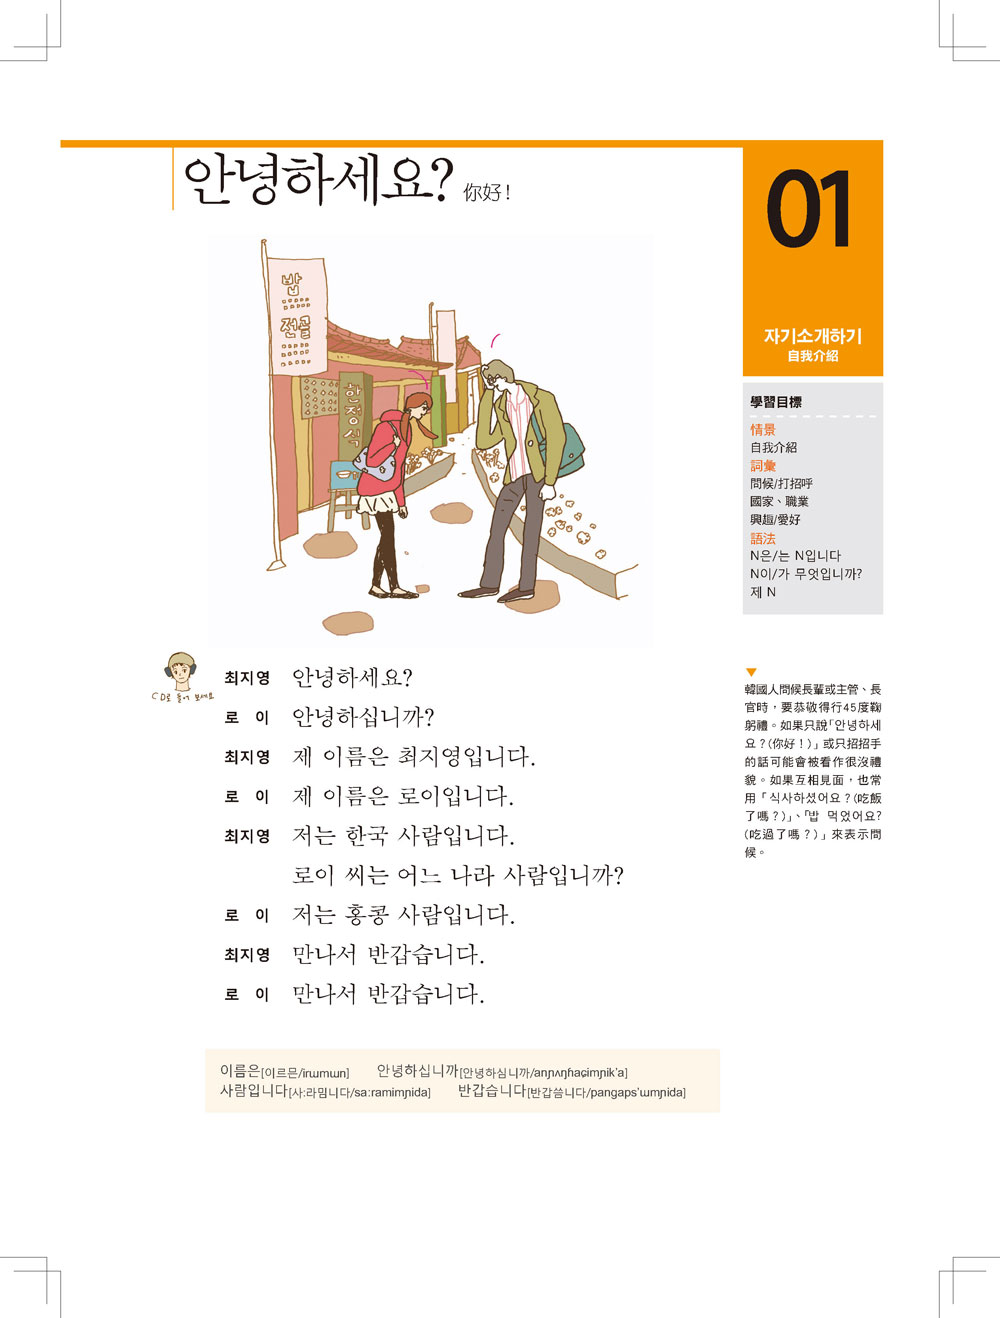 ►語言學習►暢銷書► 跟李準基一起學習”你好！韓國語”第一冊(特別附贈李準基原聲錄音2CD)